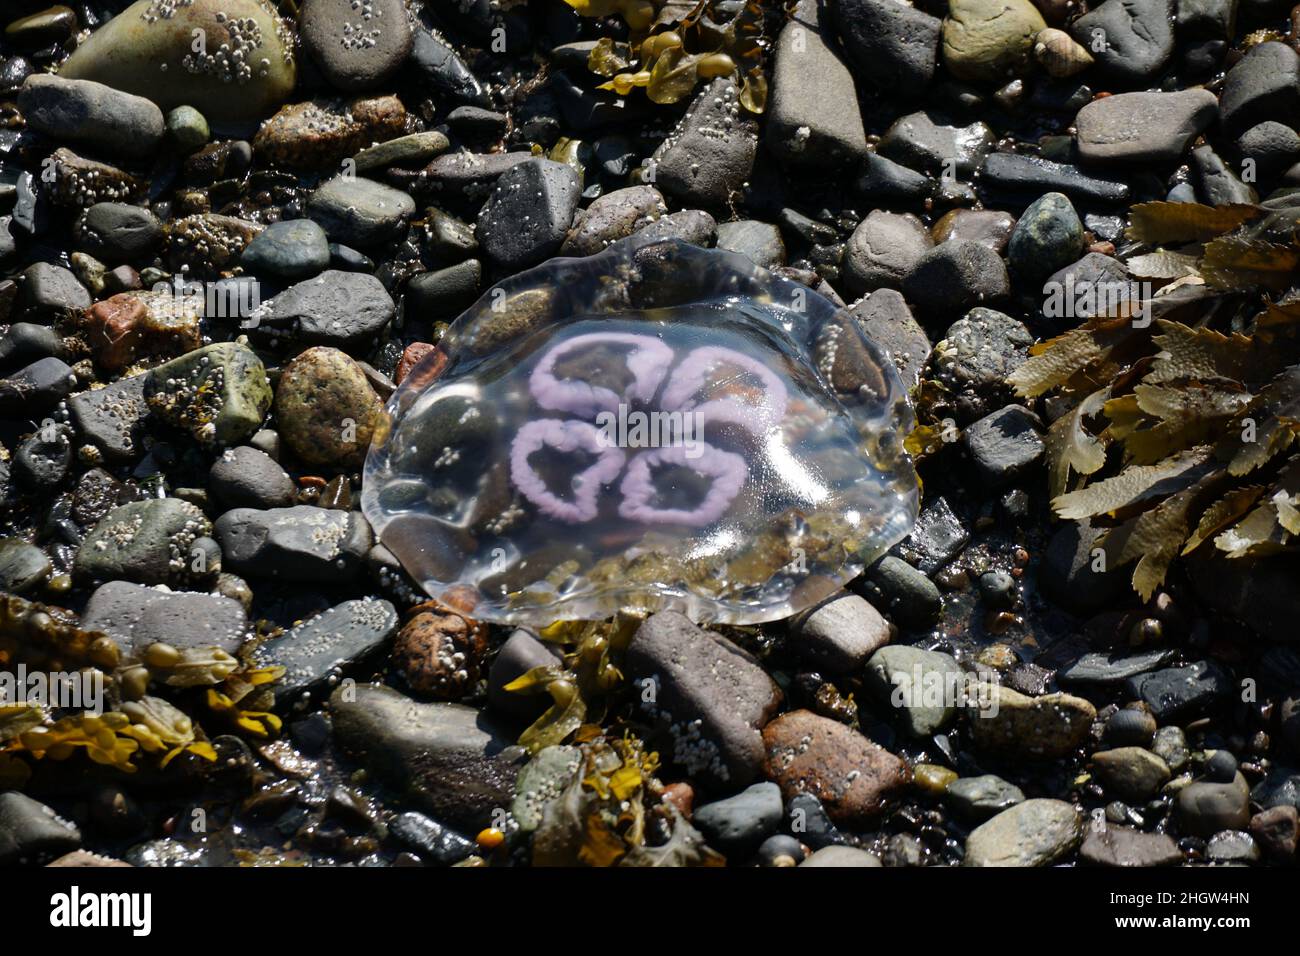 Moon Jellyfish stranded on a stony beach Stock Photo